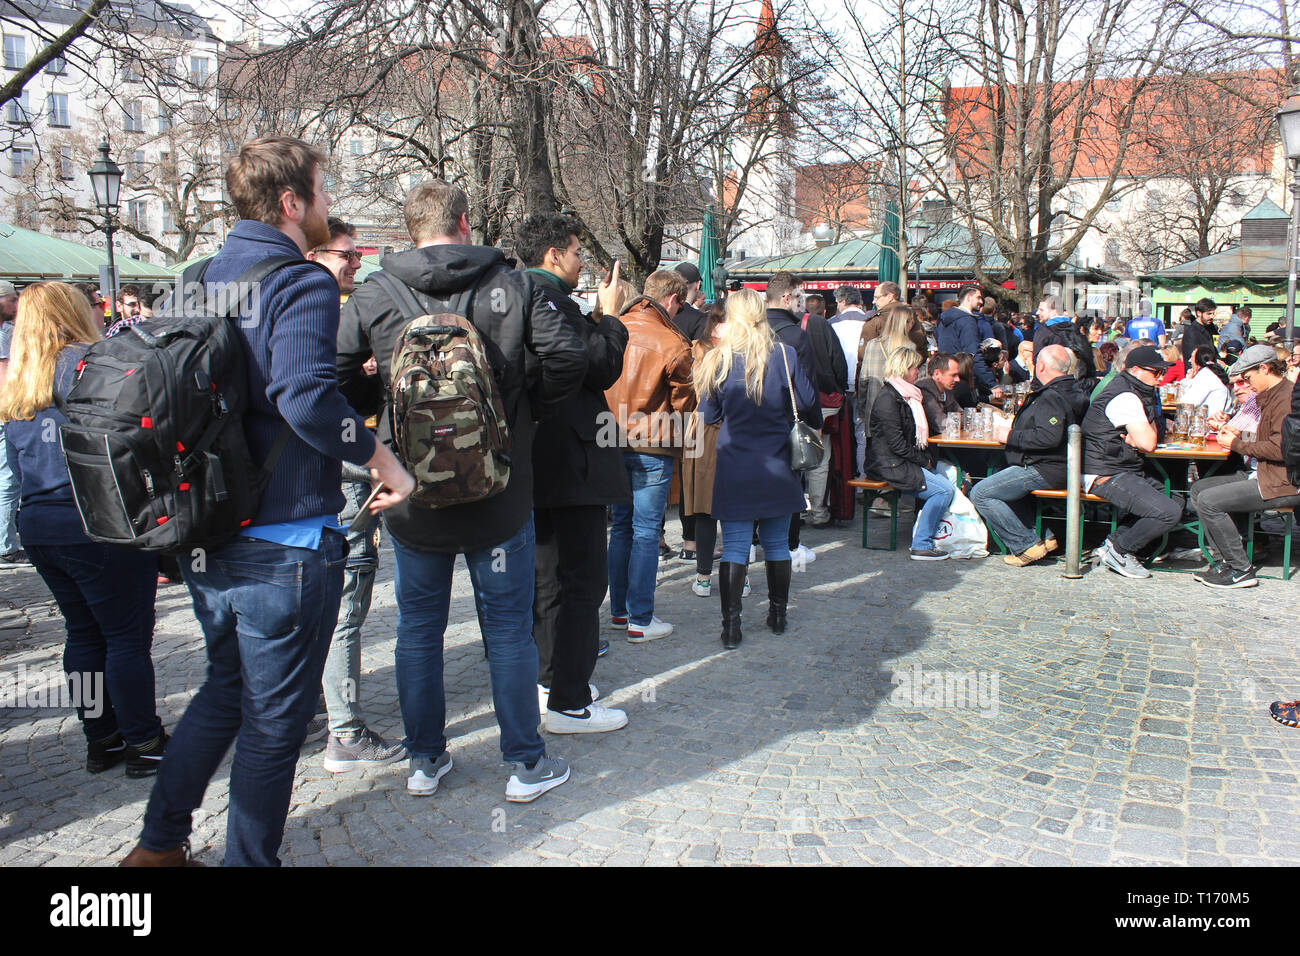 Les gens faisant la queue pour obtenir gratuitement de la bière dans le jardin de la bière, Munich, Viktualienmarkt. Offre spéciale en raison de 125 Jubilé anniversaire de la brasserie. Banque D'Images